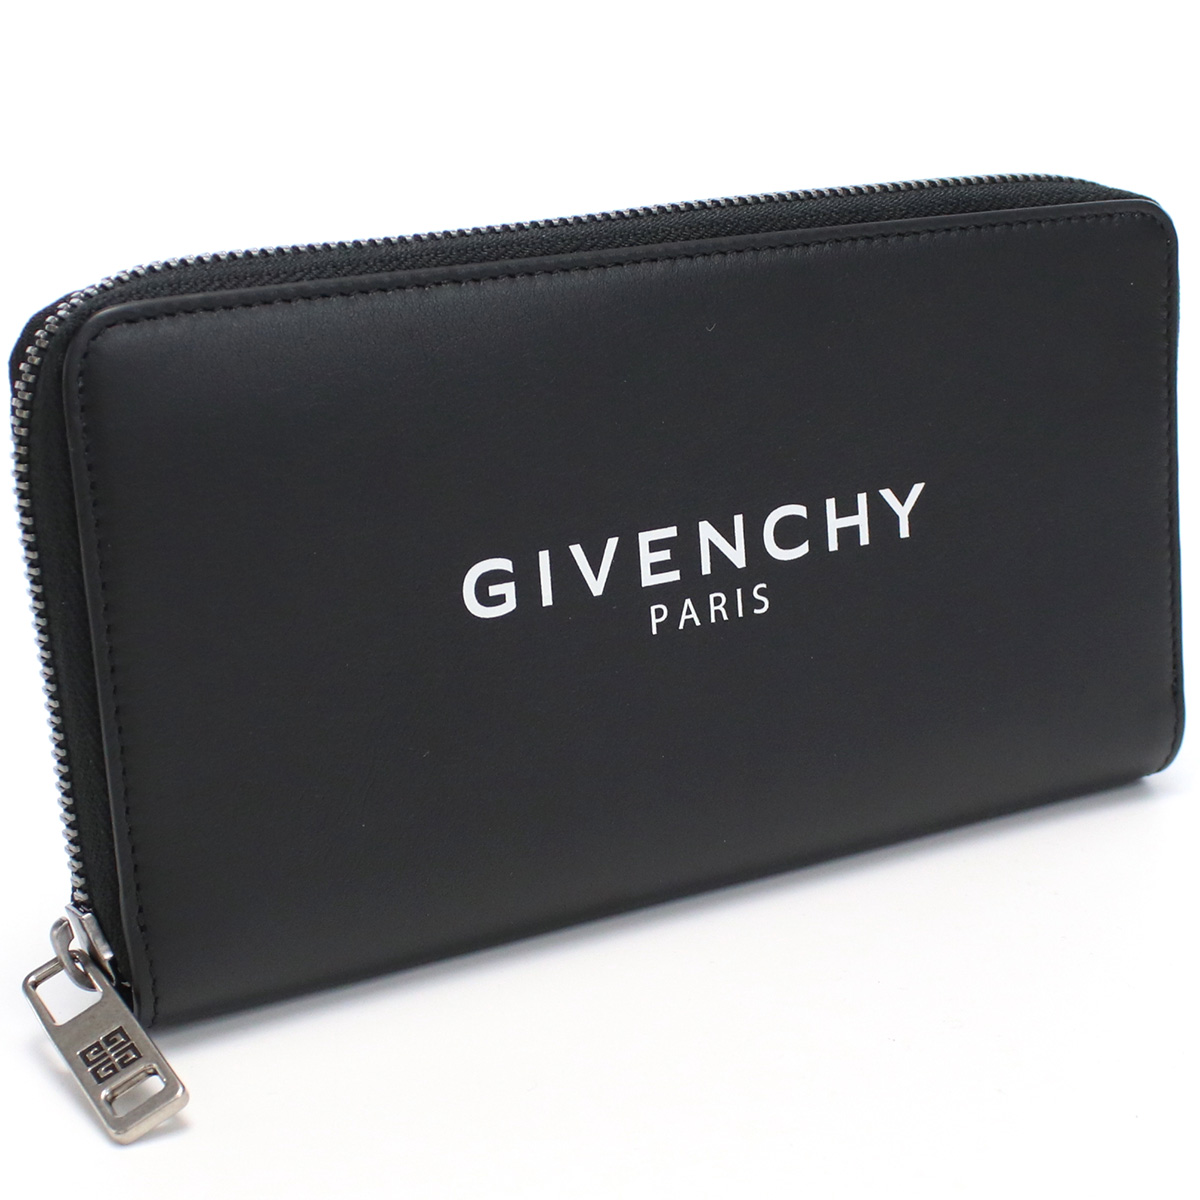 Givenchy ジバンシー BK600G 長財布ラウンドファスナー ブラック メンズのサムネイル